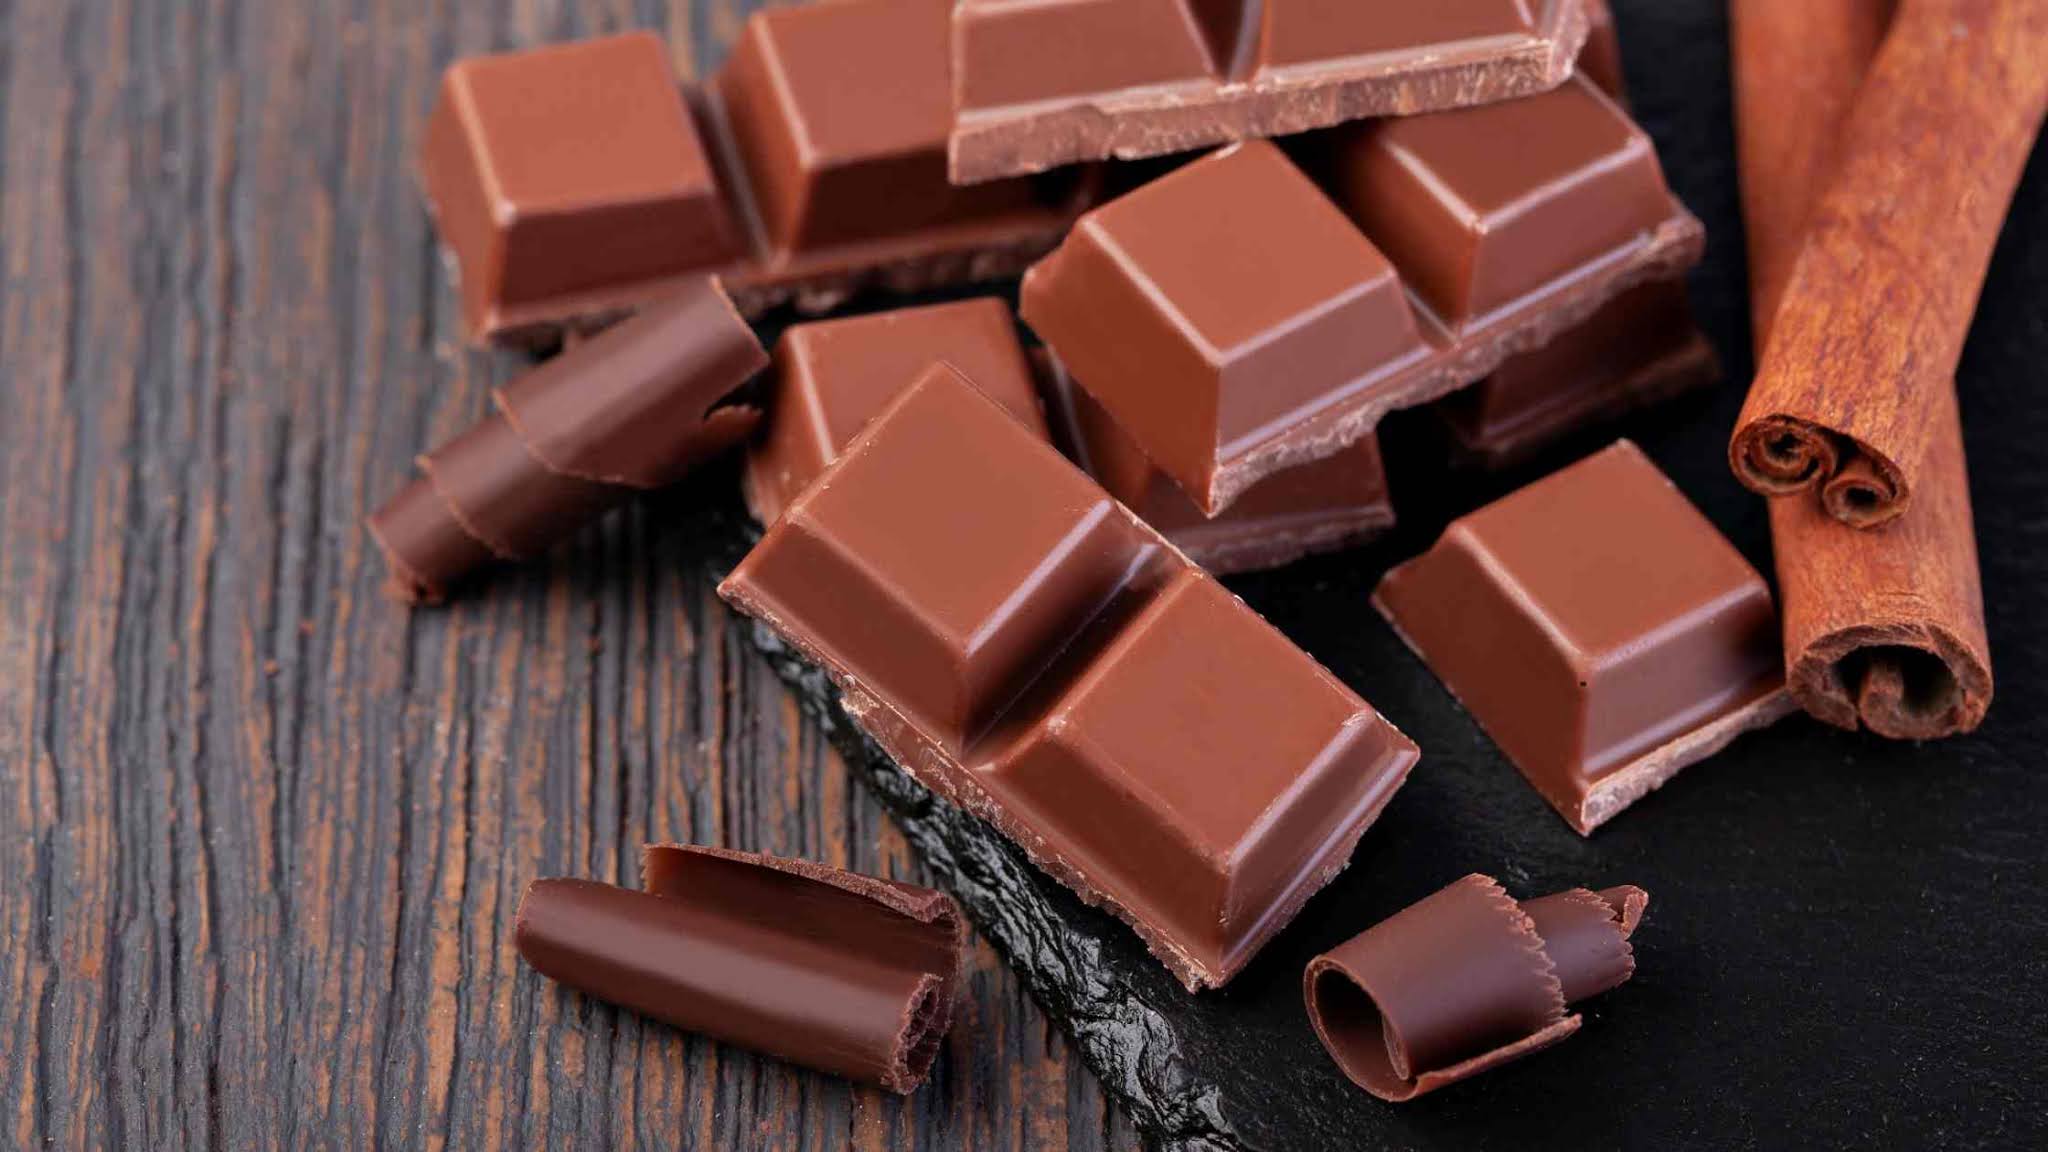 Top Ten Health Benefits Of Dark Chocolate For Your Health